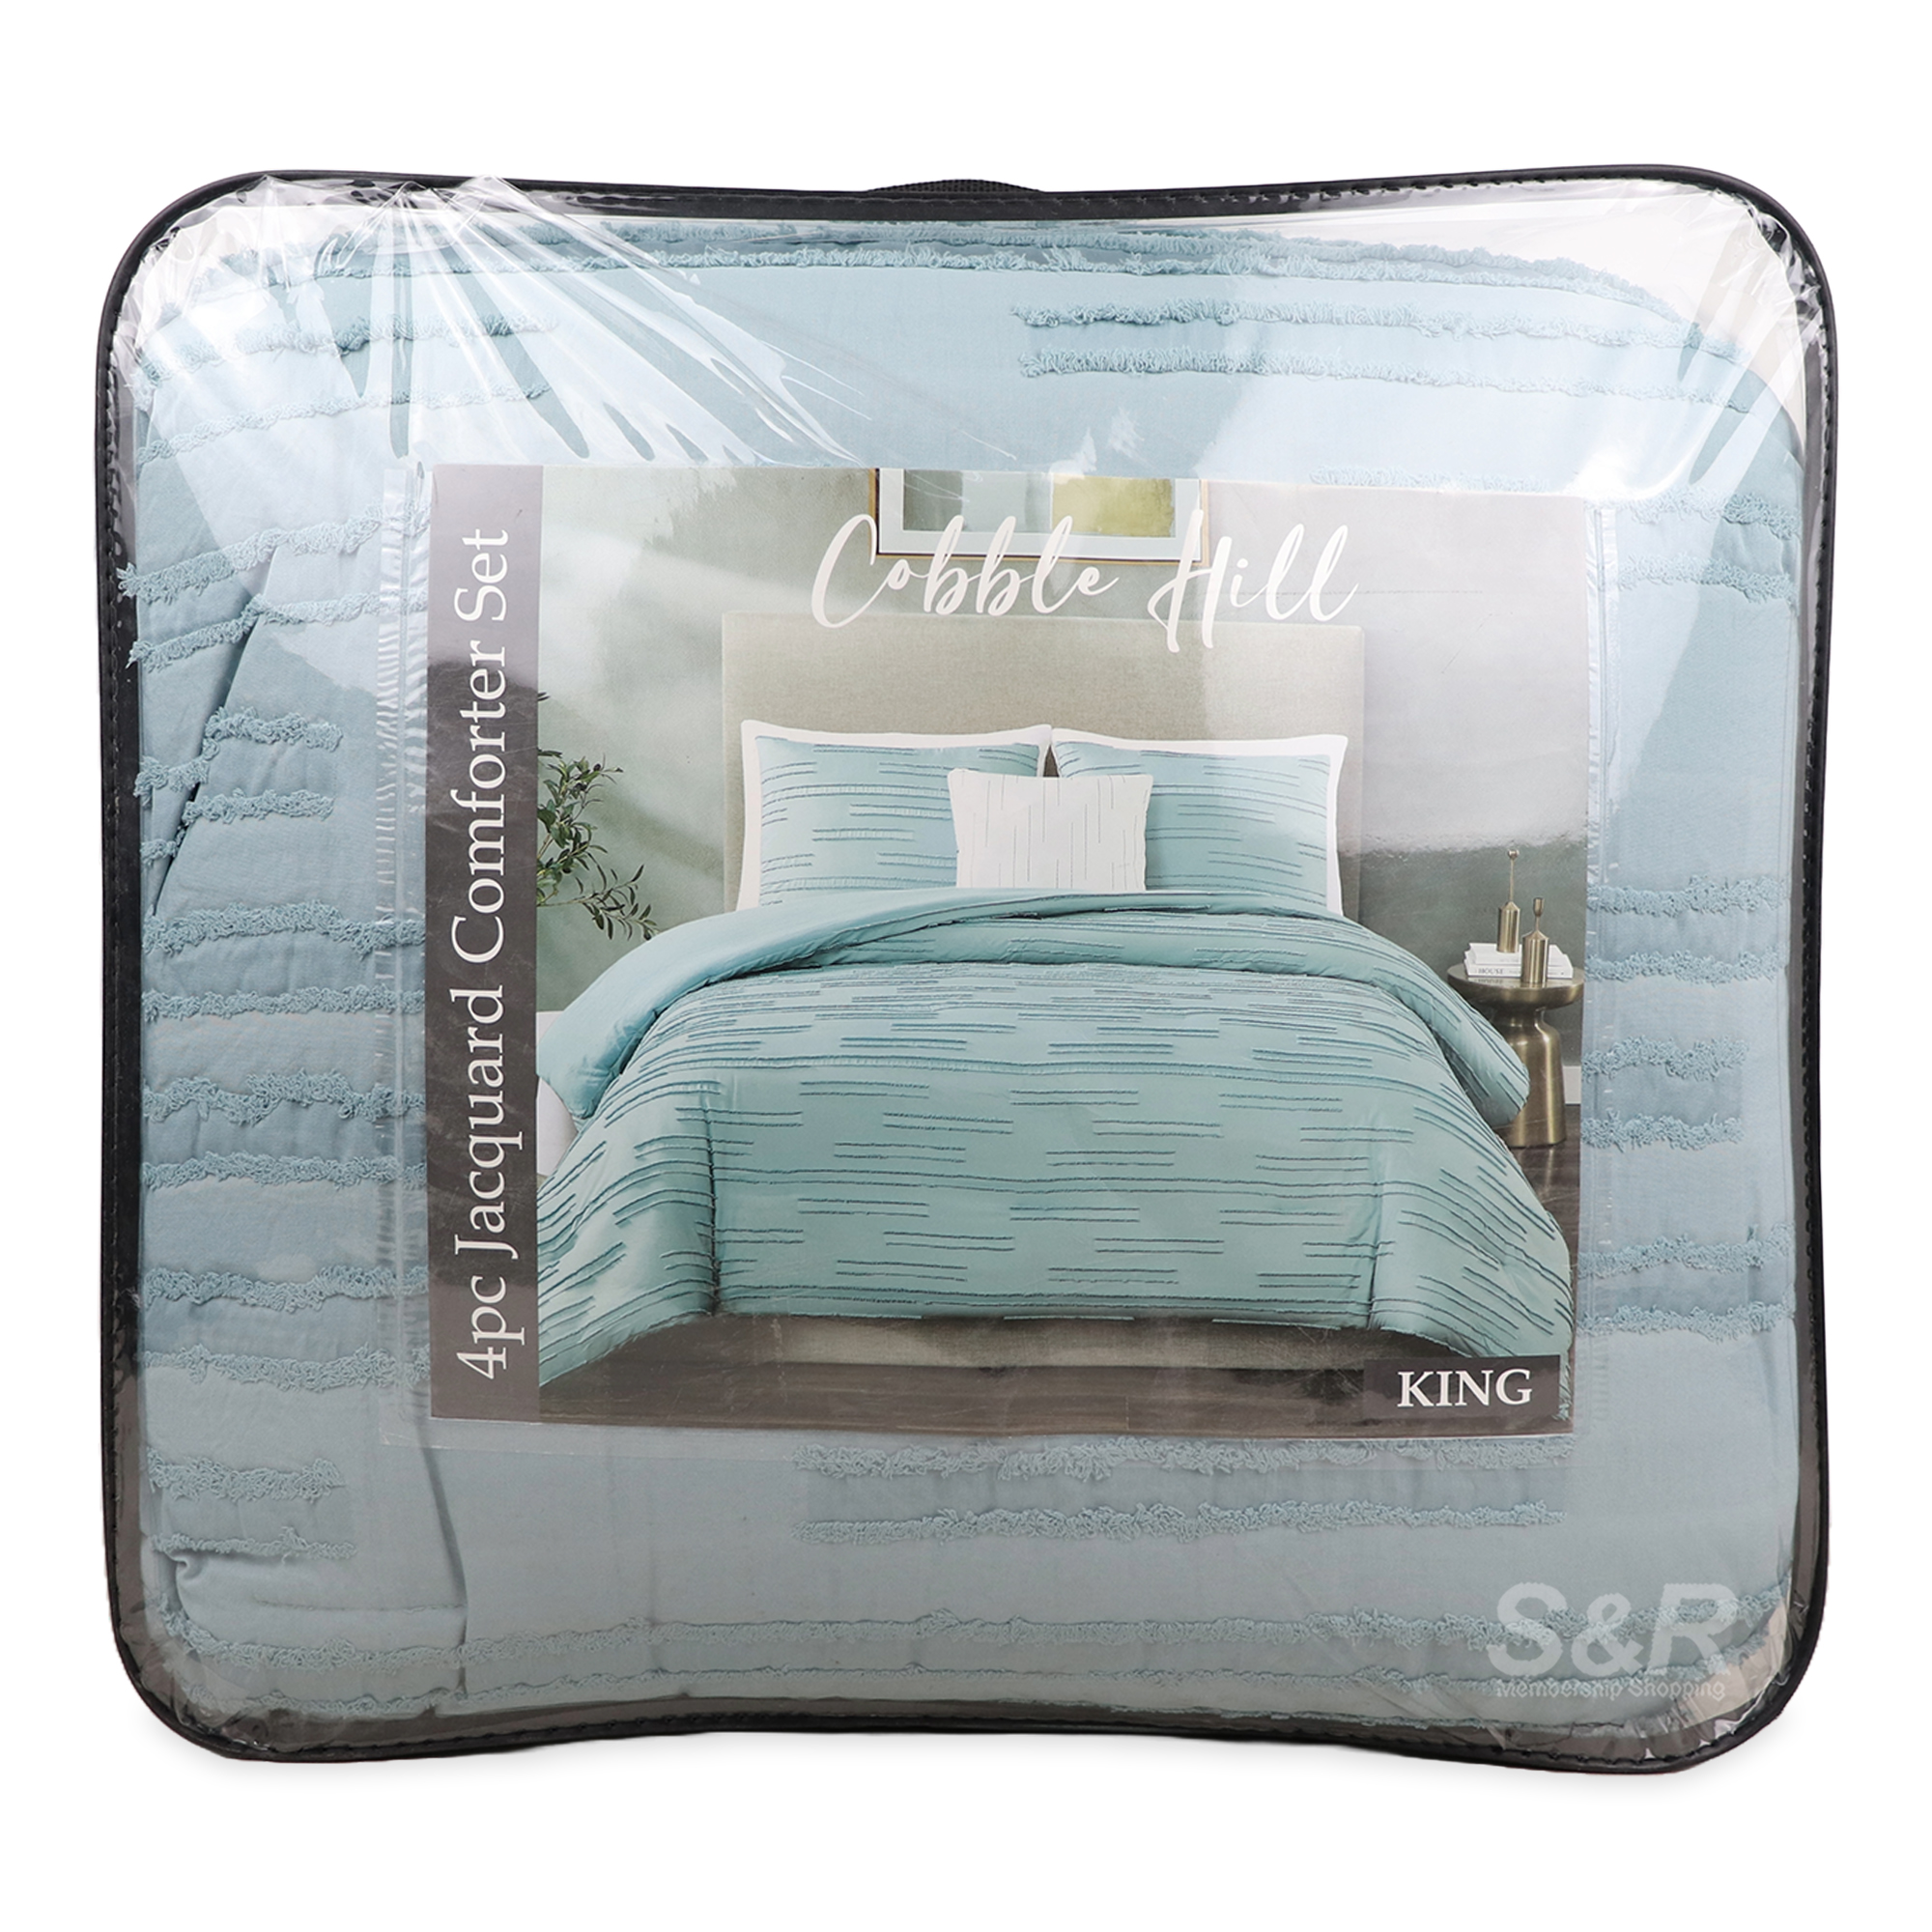 Cobble Hill Jacquard Comforter Set 4pc King